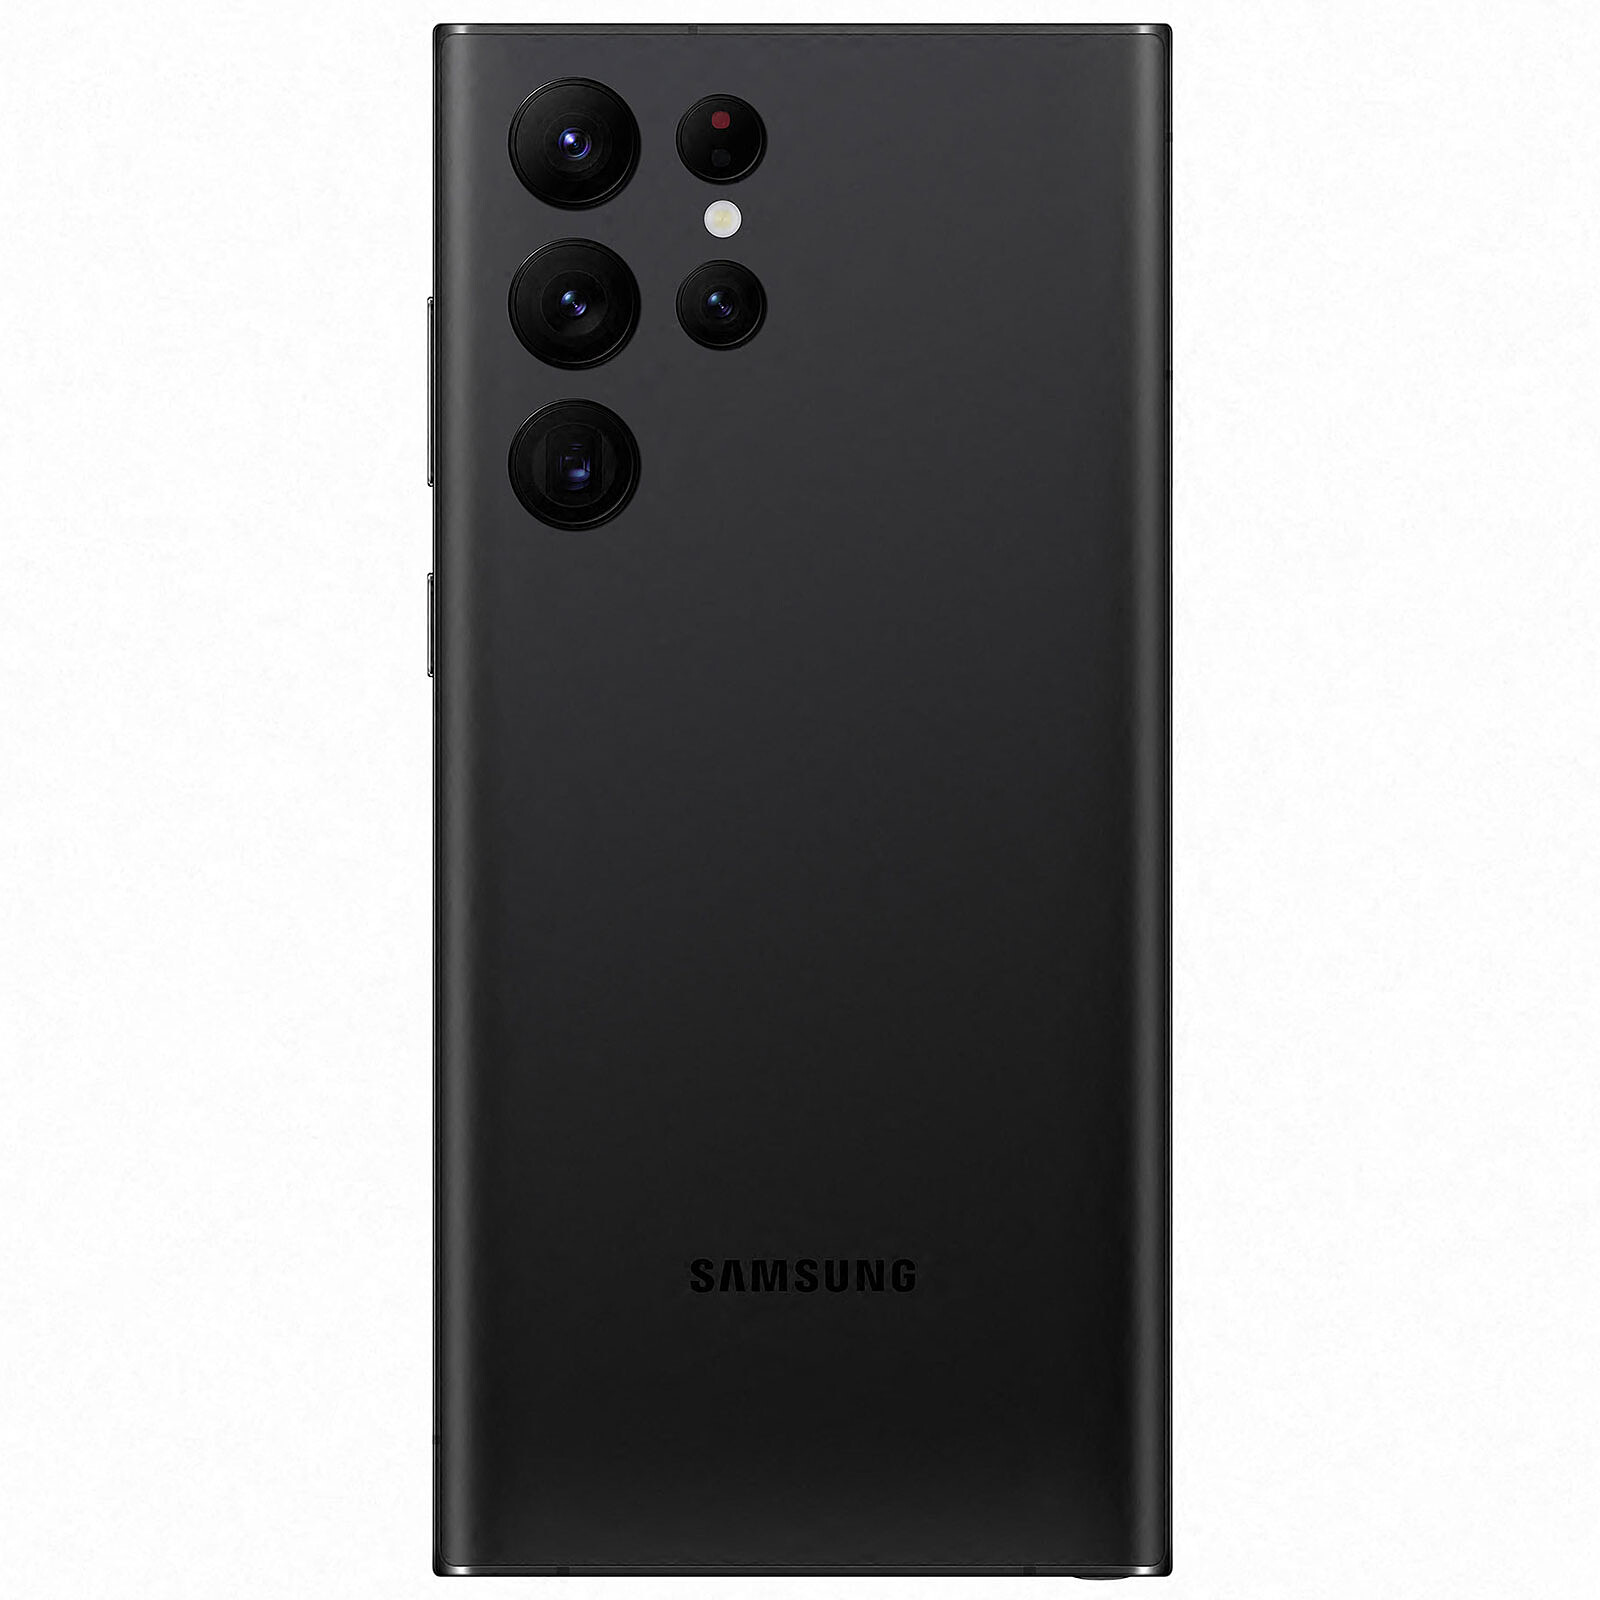 Samsung Galaxy Note 8 - smartphone reconditionné Capacité 64 Go Grade  esthétique Très bon état Couleur Noir Batterie Batterie neuve